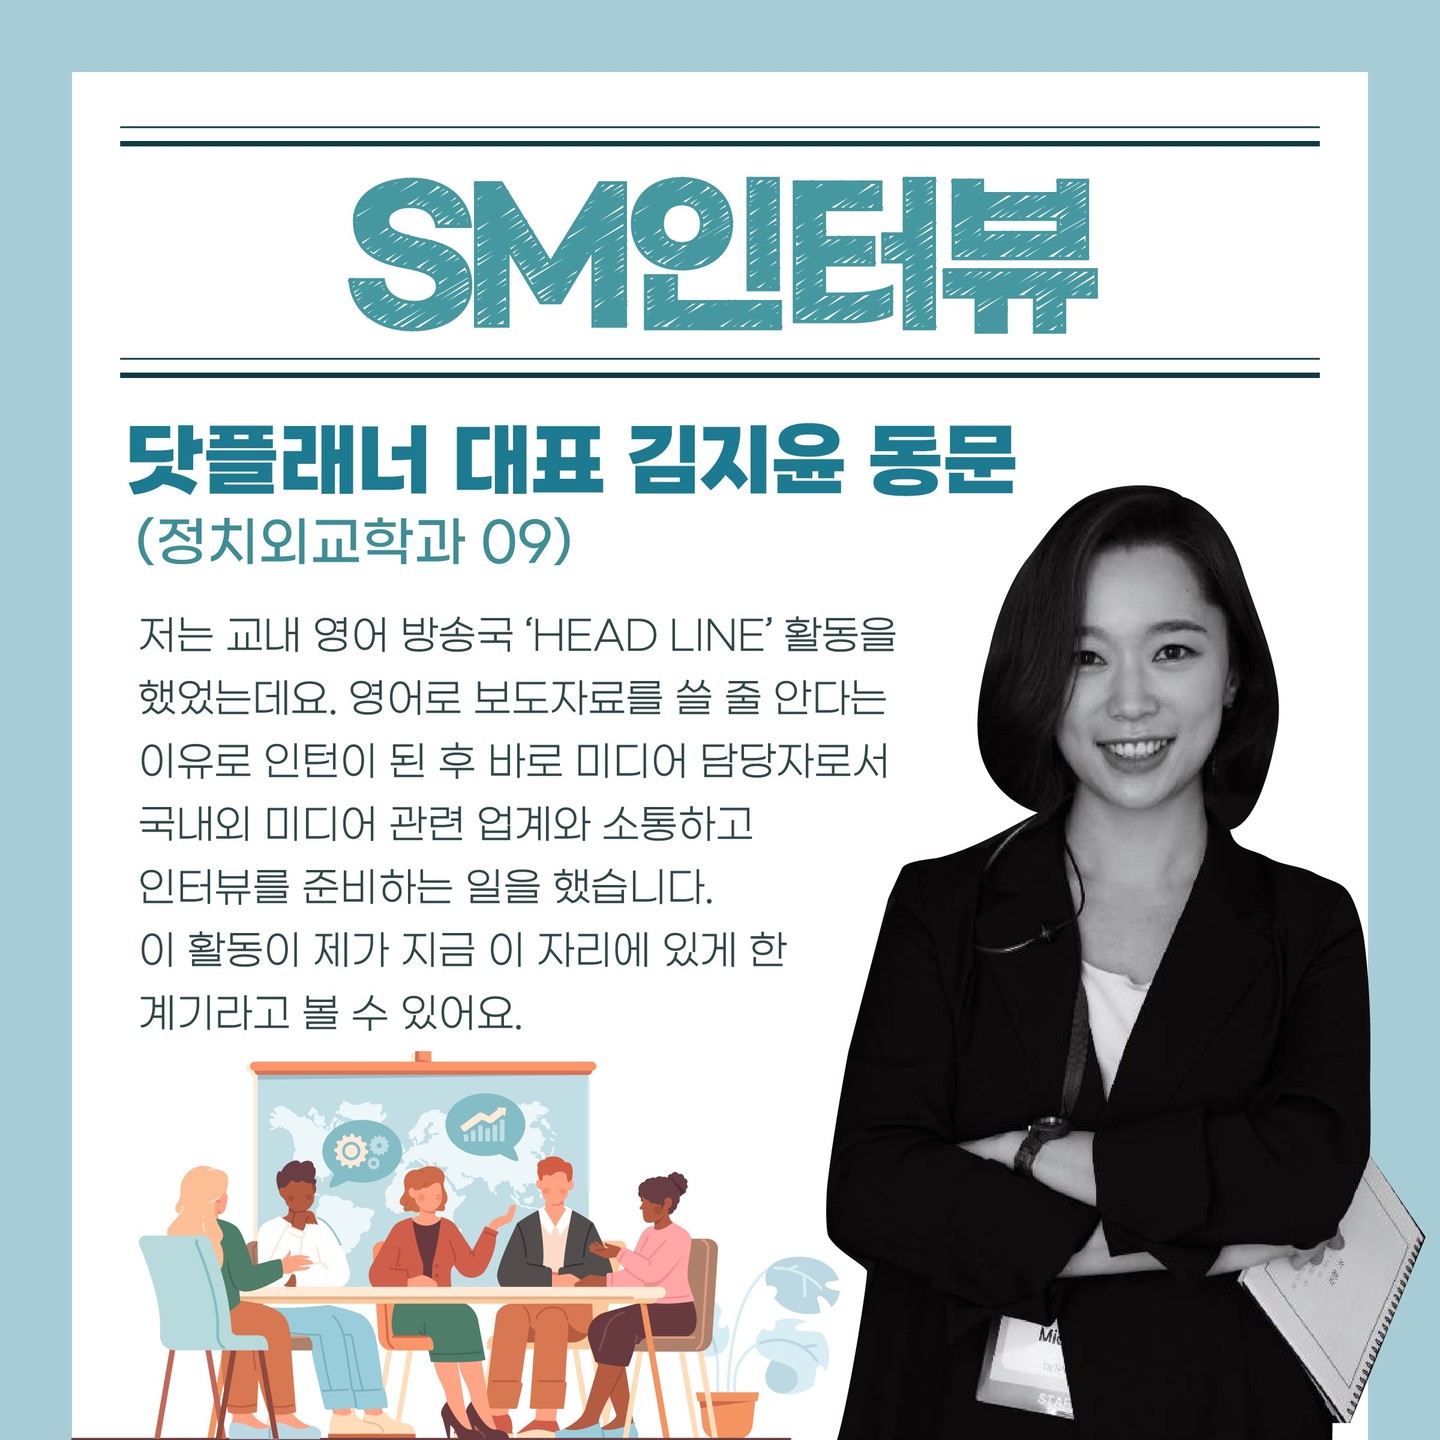 "기획을 통해 세상의 변화에 기여하고 싶어요" 닷플래너 대표 김지윤 동문